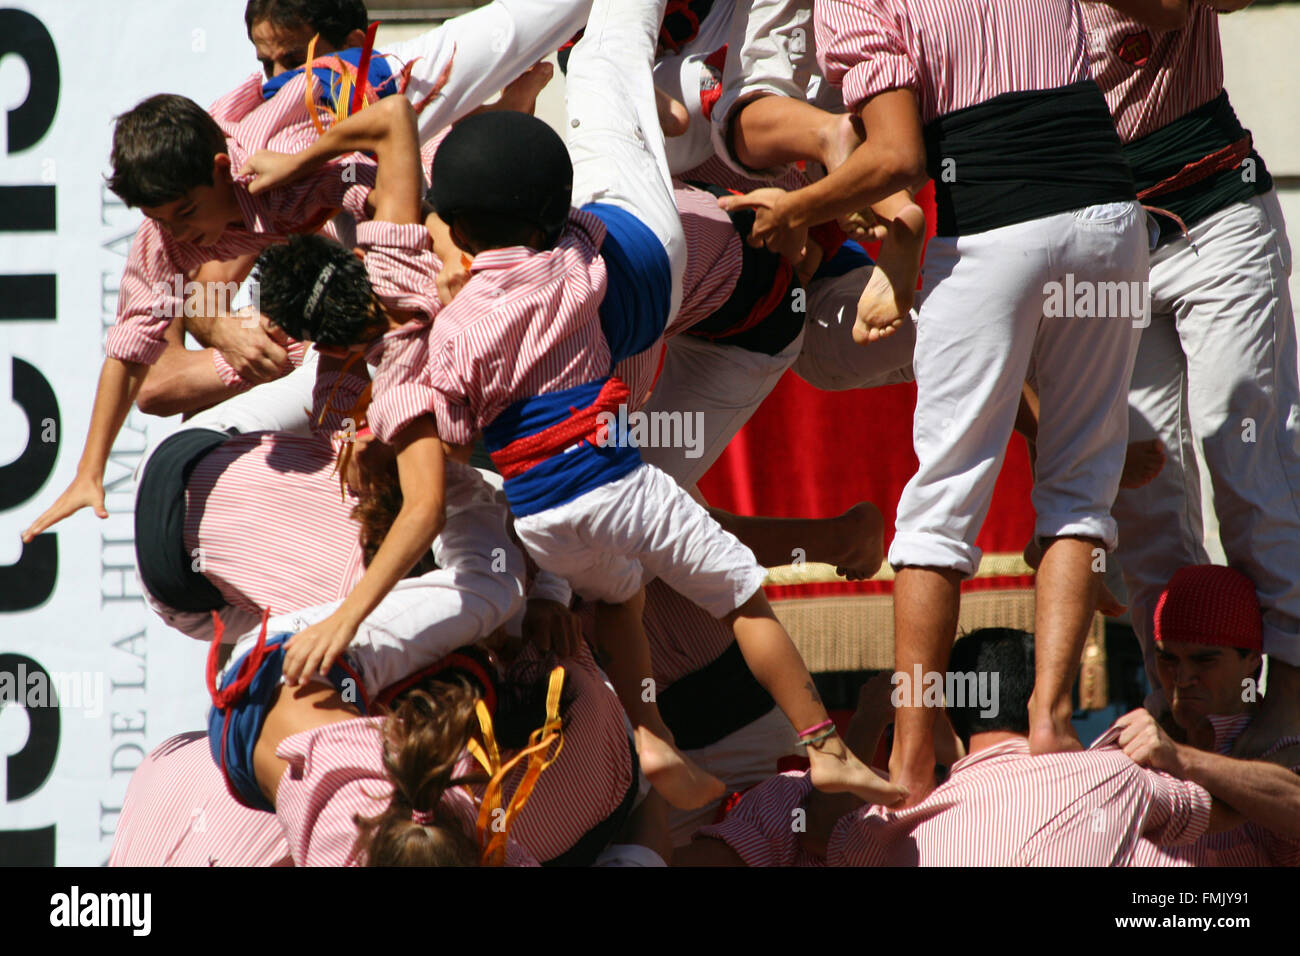 Les gens tomber à partir d'une tour, un spectacle traditionnel appelé castellers de Catalogne Banque D'Images